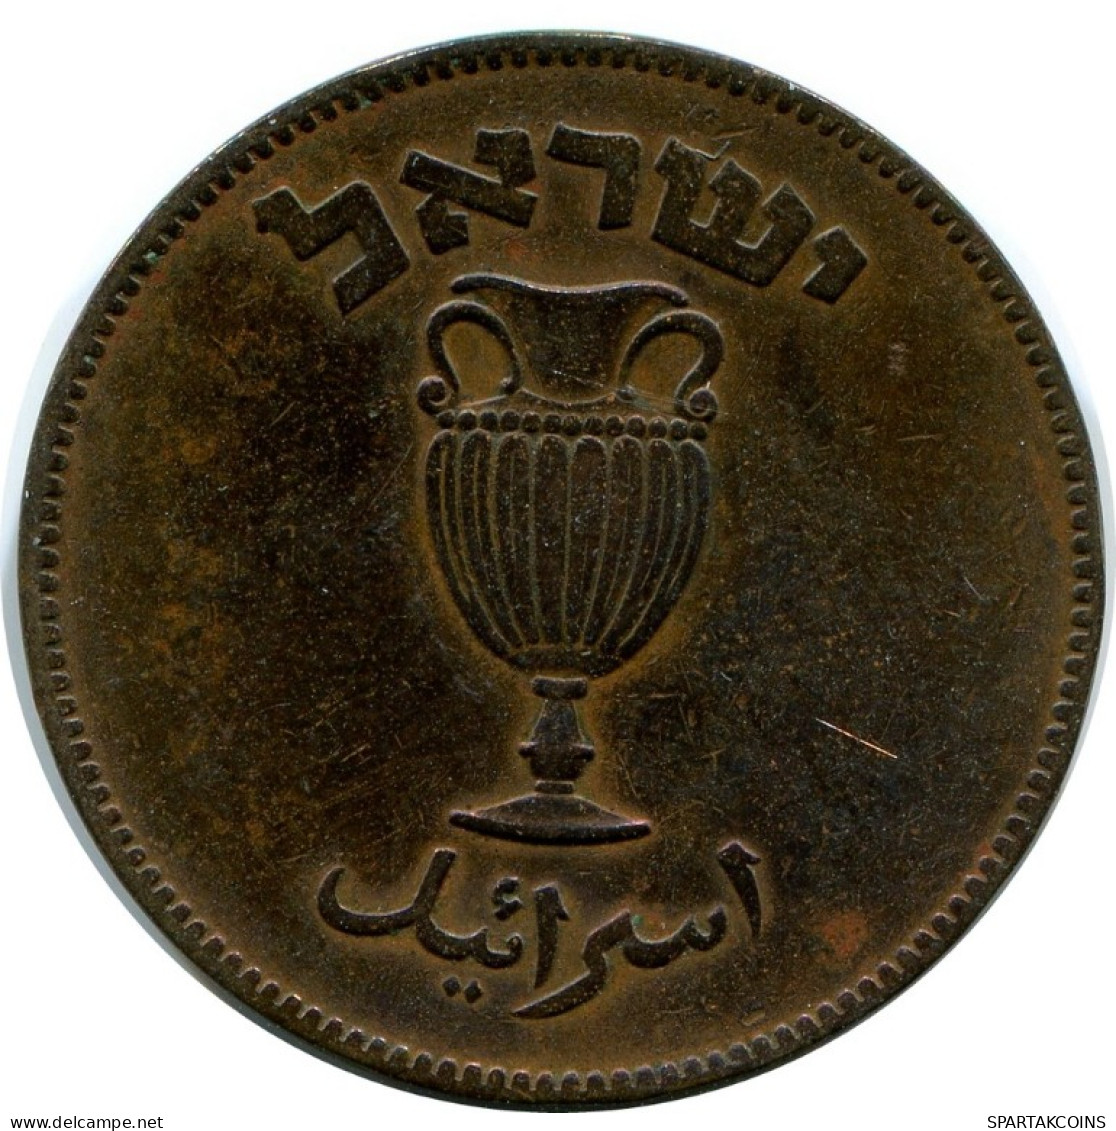 10 PRUTA 1949 ISRAEL Coin #AH866.U.A - Israel